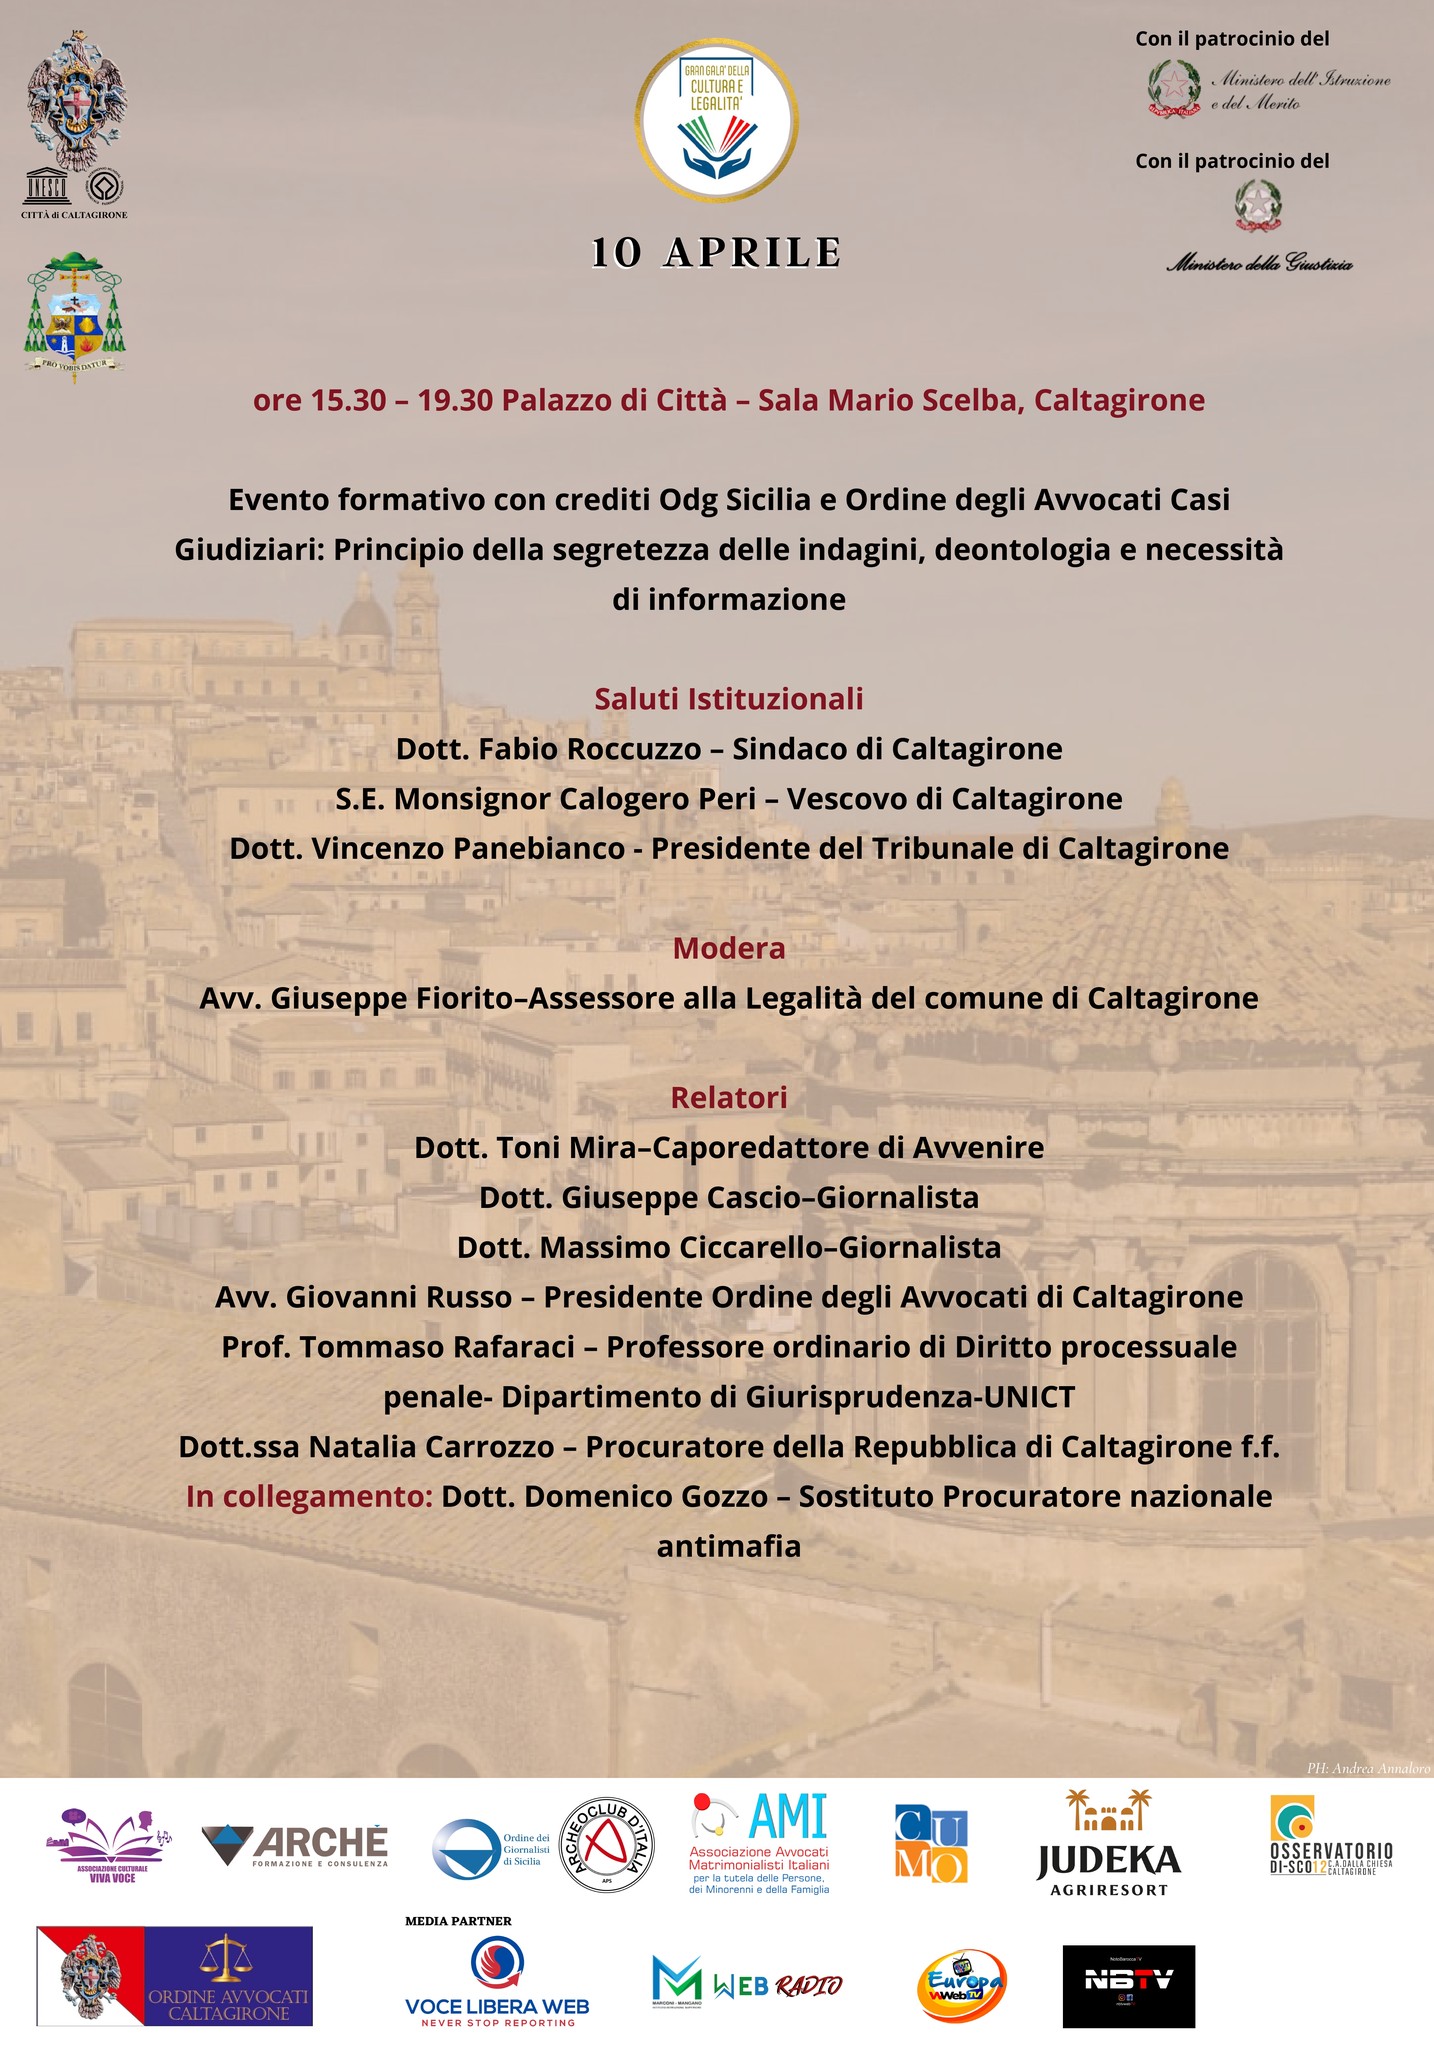 GRAN-GALA-3 Quarta edizione del Gran Galà della Cultura e della Legalità: a Caltagirone, mercoledì 10 aprile